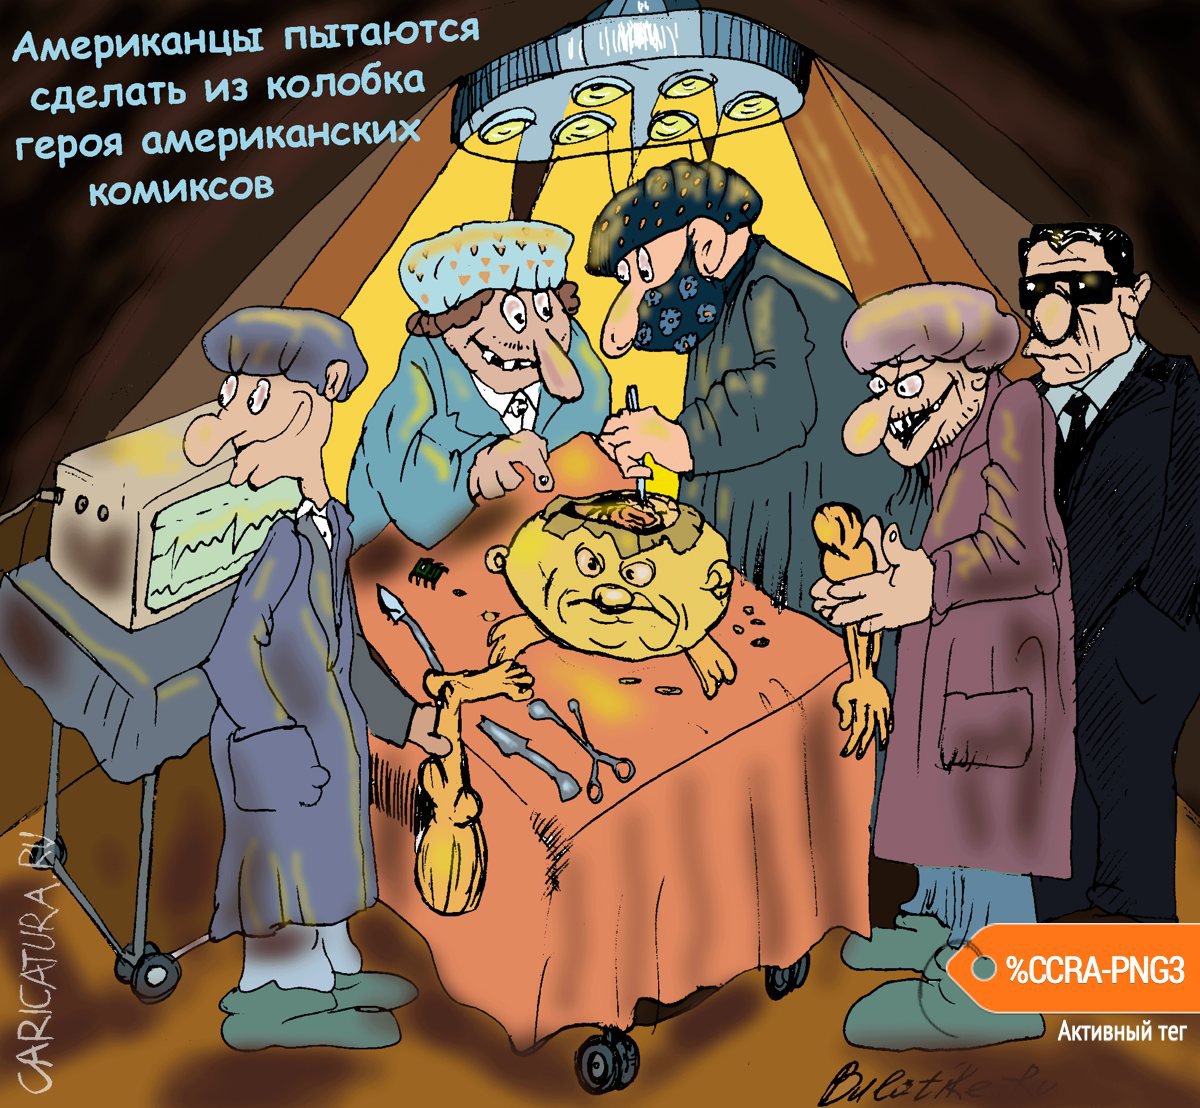 Карикатура "Американцы и колобок", Булат Ирсаев